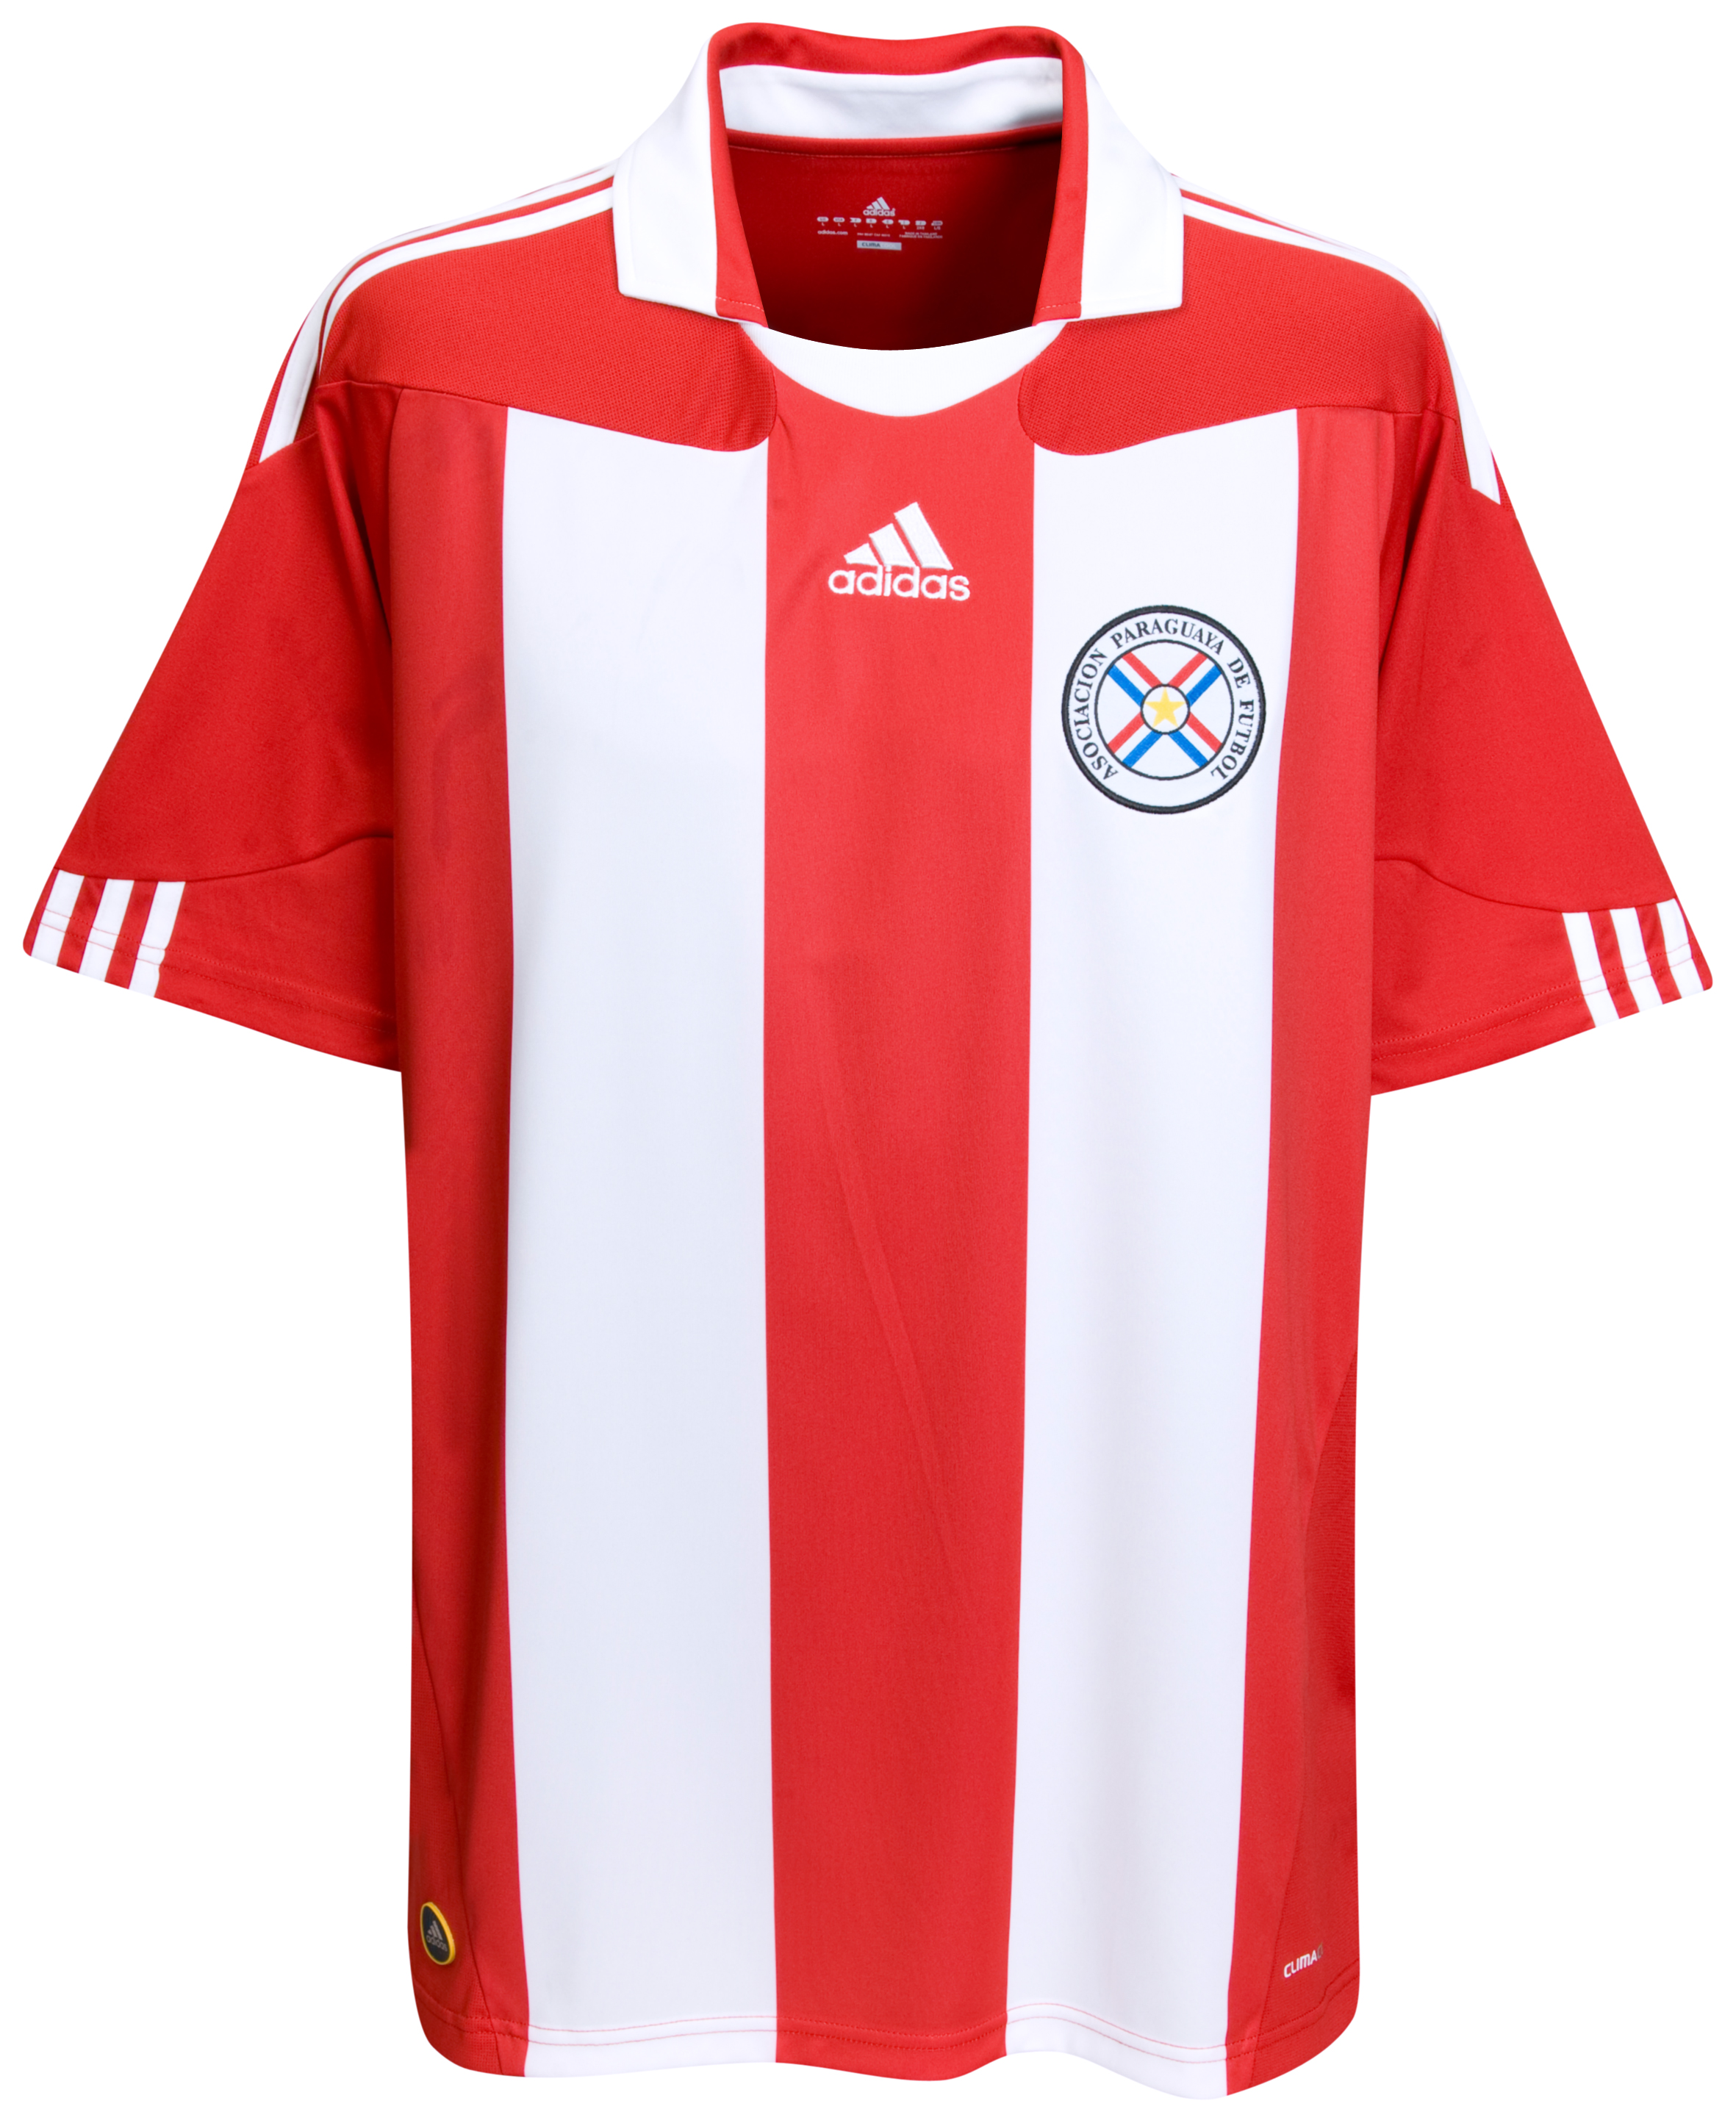 الملابس النهائيه لكأس العالم (2010) Kb-63747